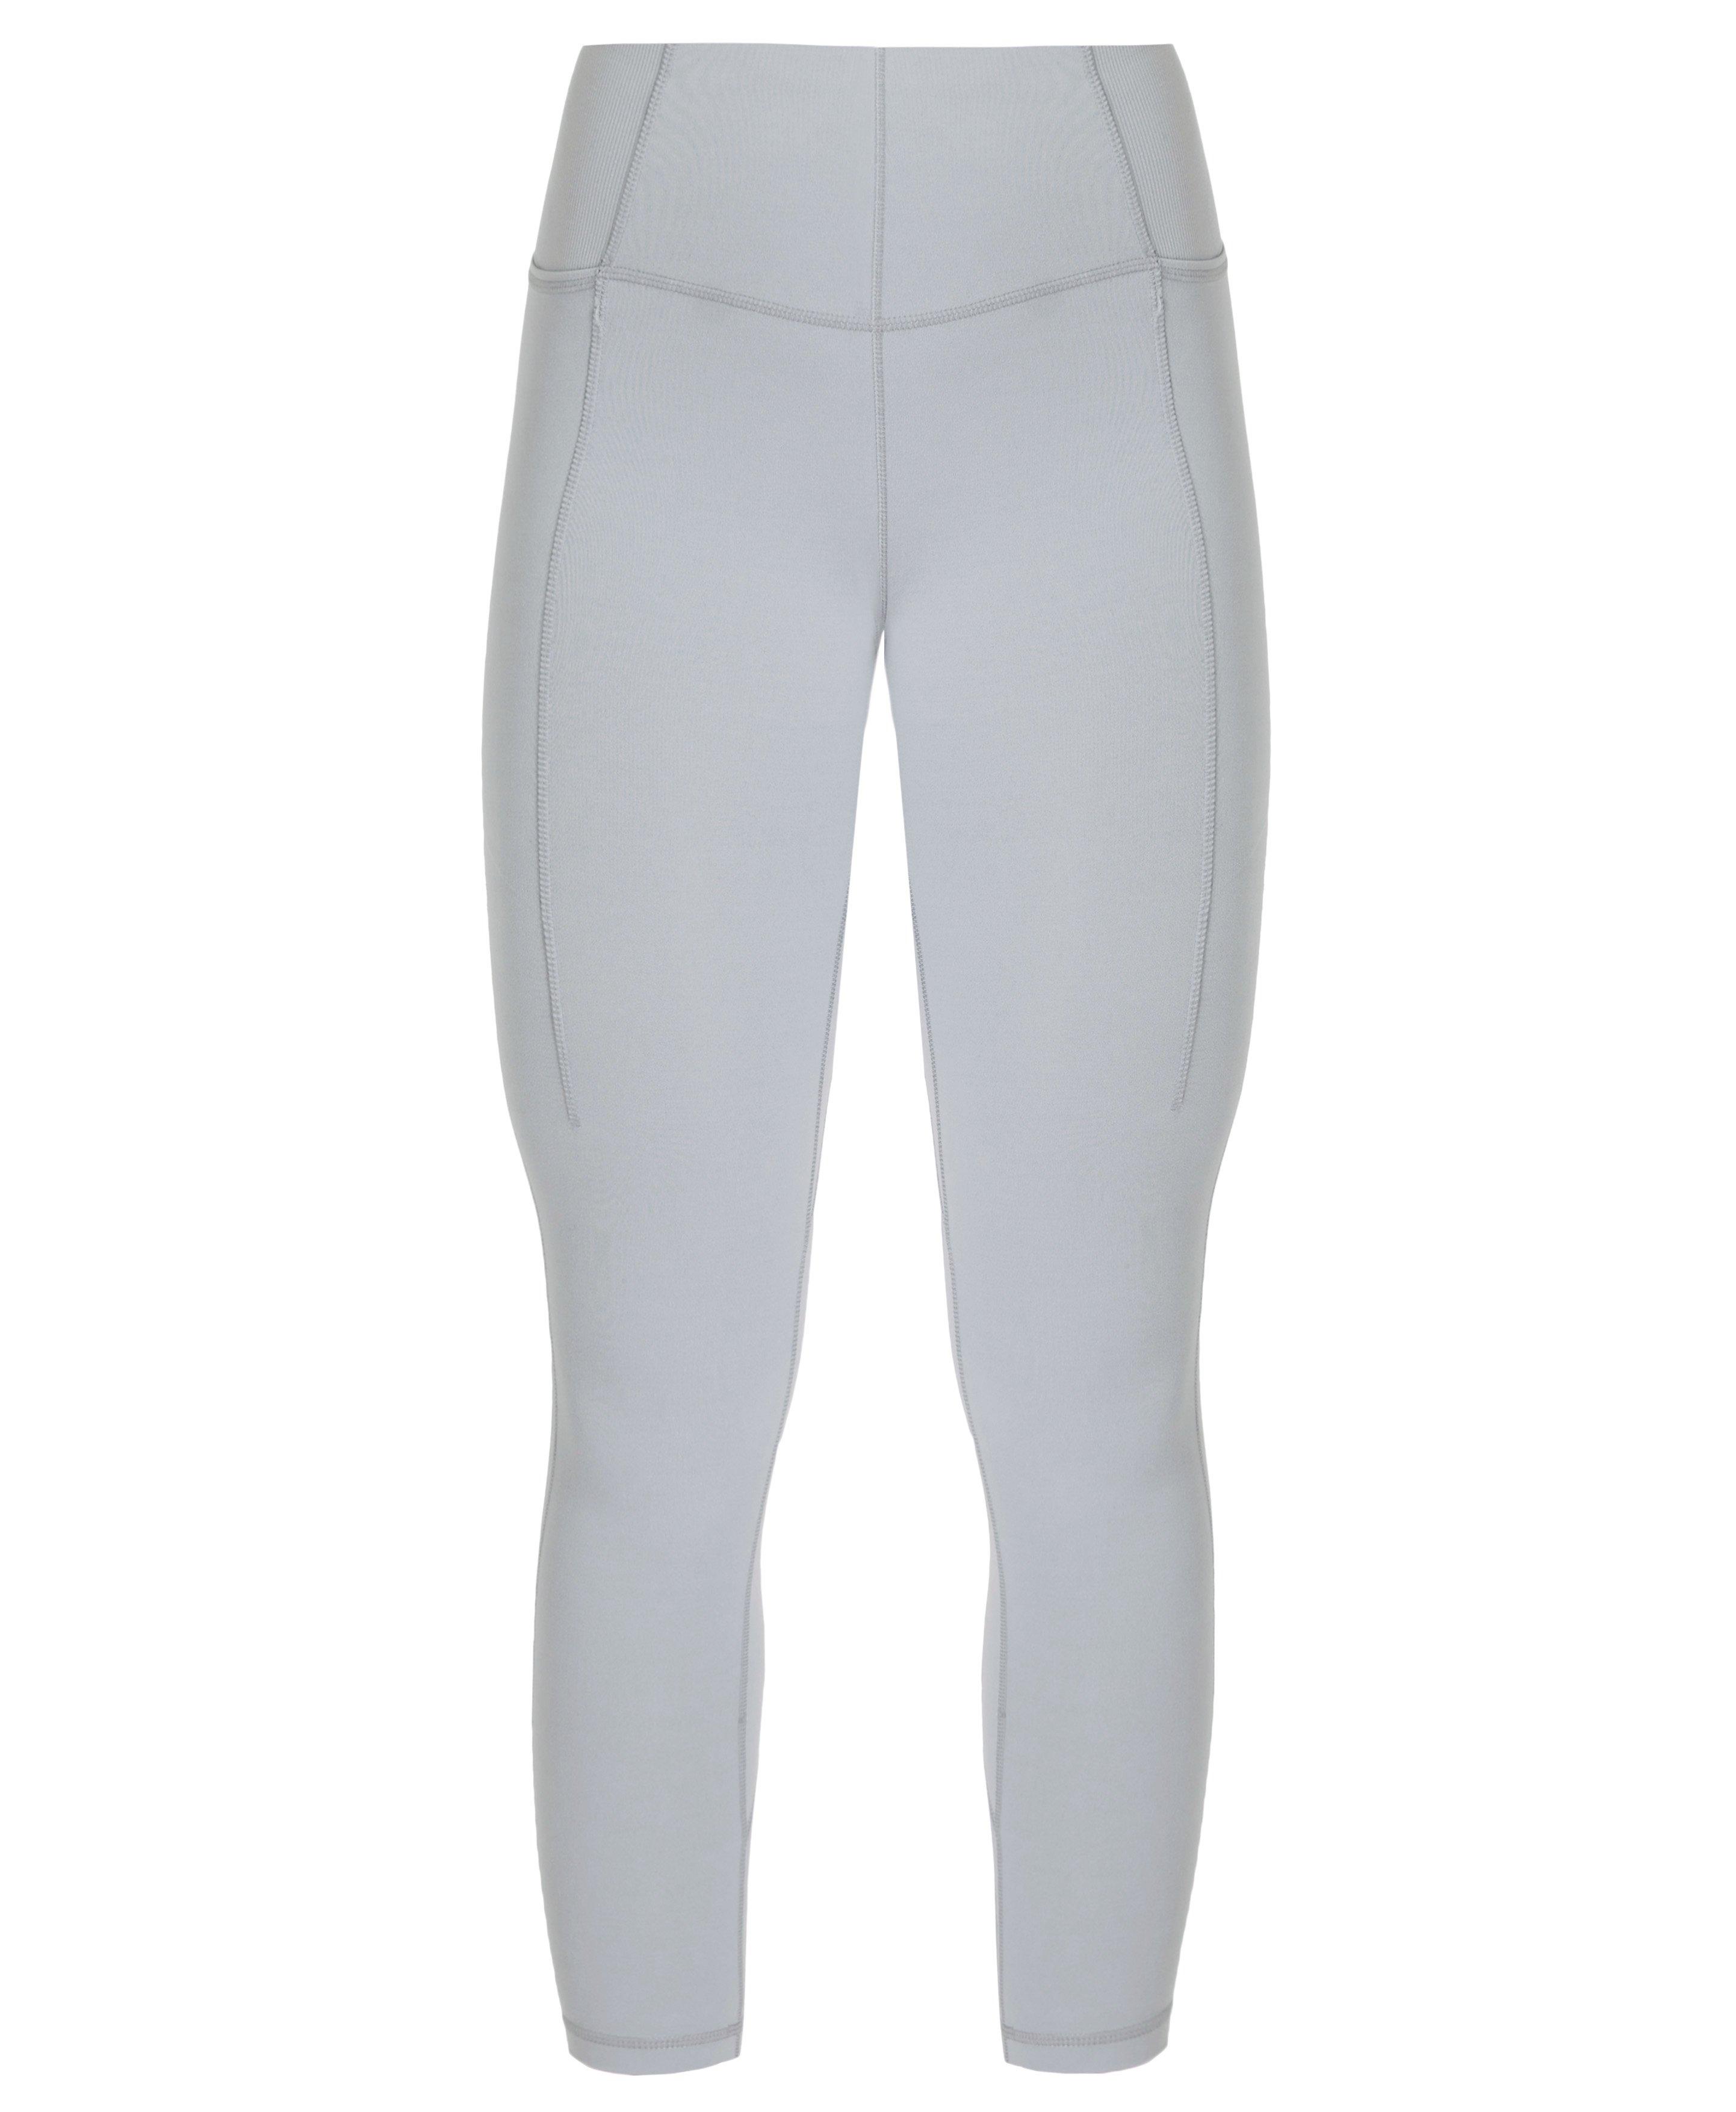 Gaiam Leggings Womens Medium Gray White Stripe Stretch Athletic Yoga Pants  EUC